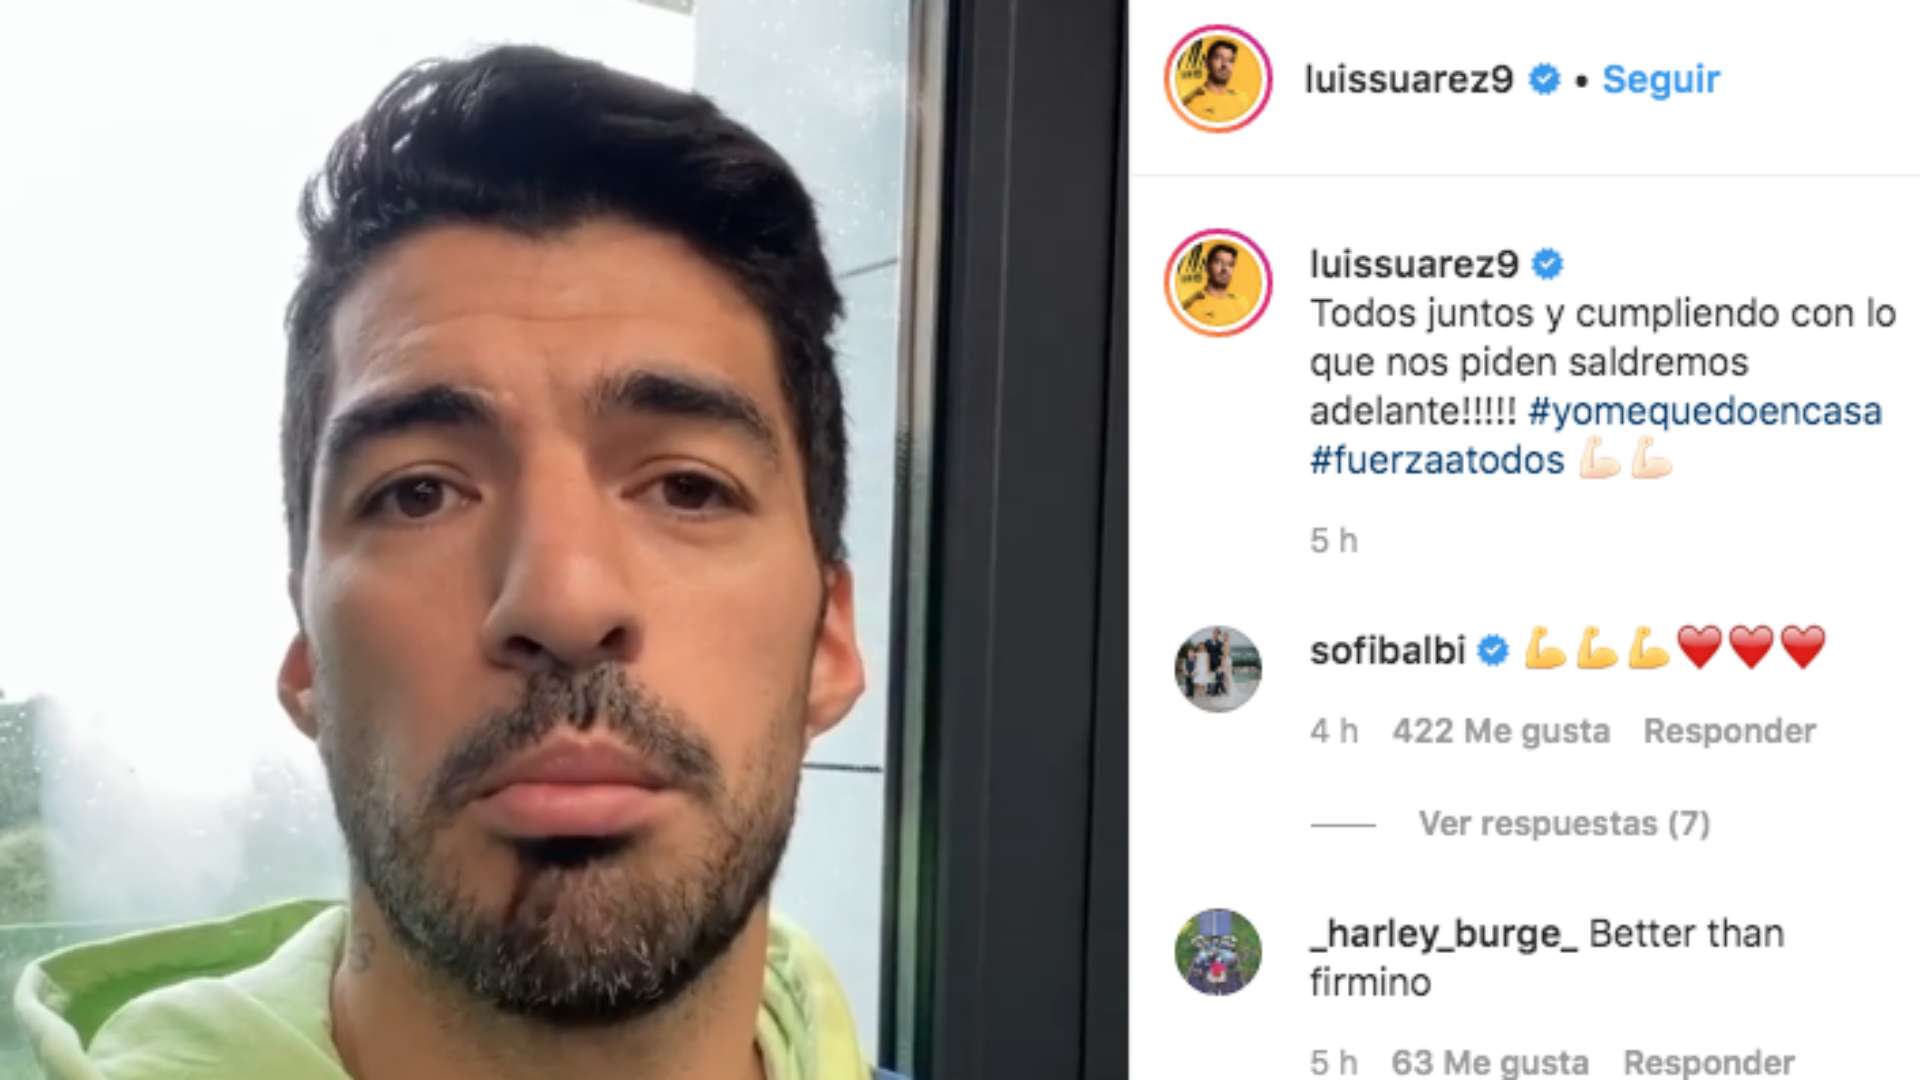 Luis Suarez Instagram